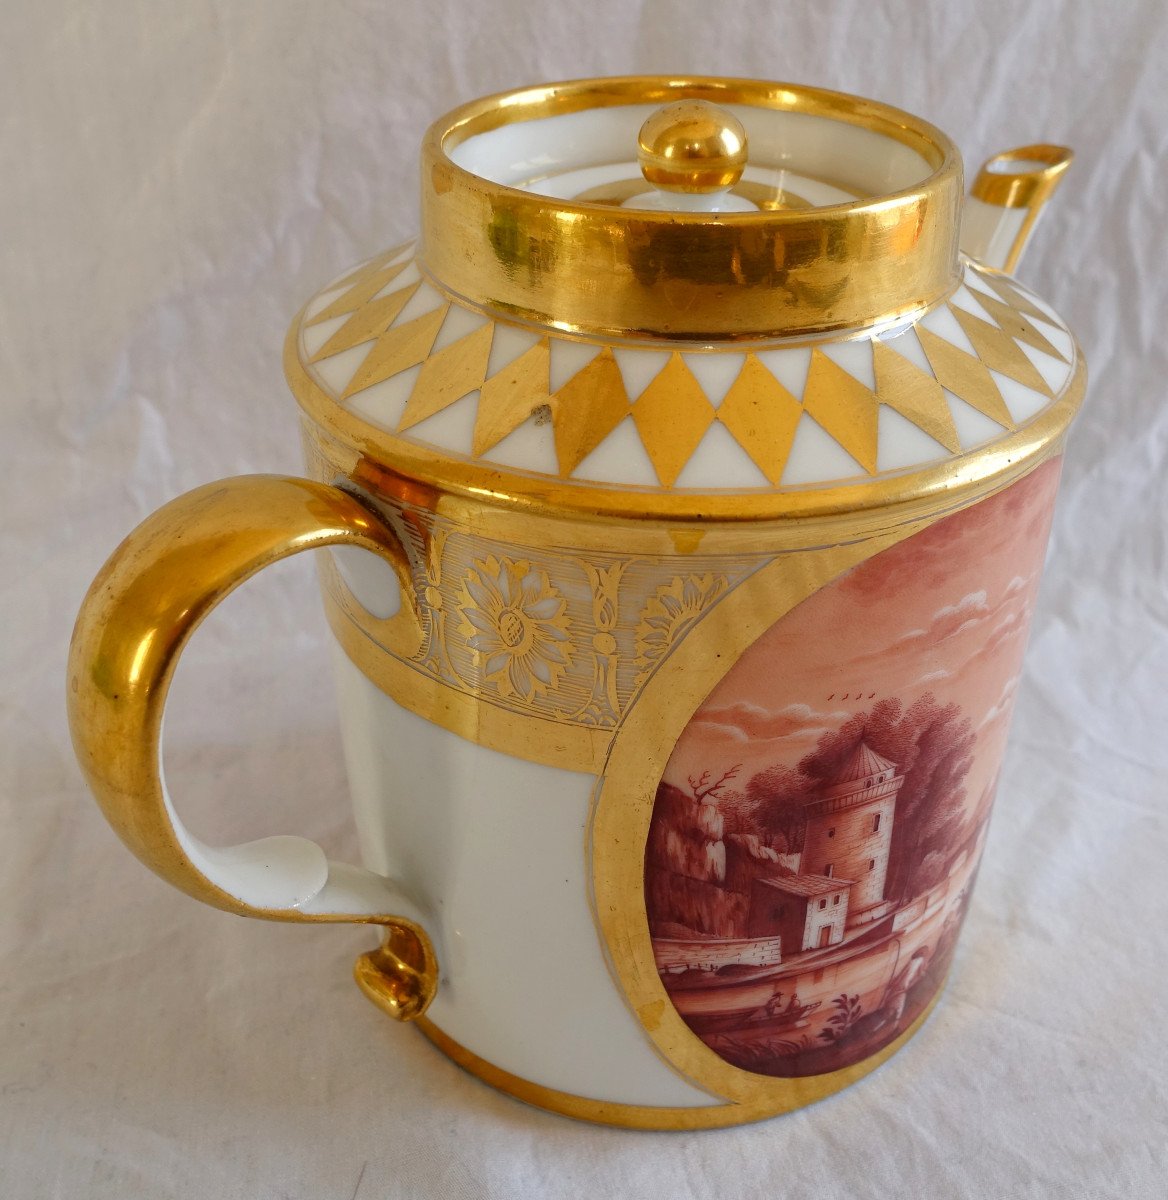 Schoelcher Manufacture - Directoire Empire Period Porcelain Teapot - Camaieu Landscapes-photo-3